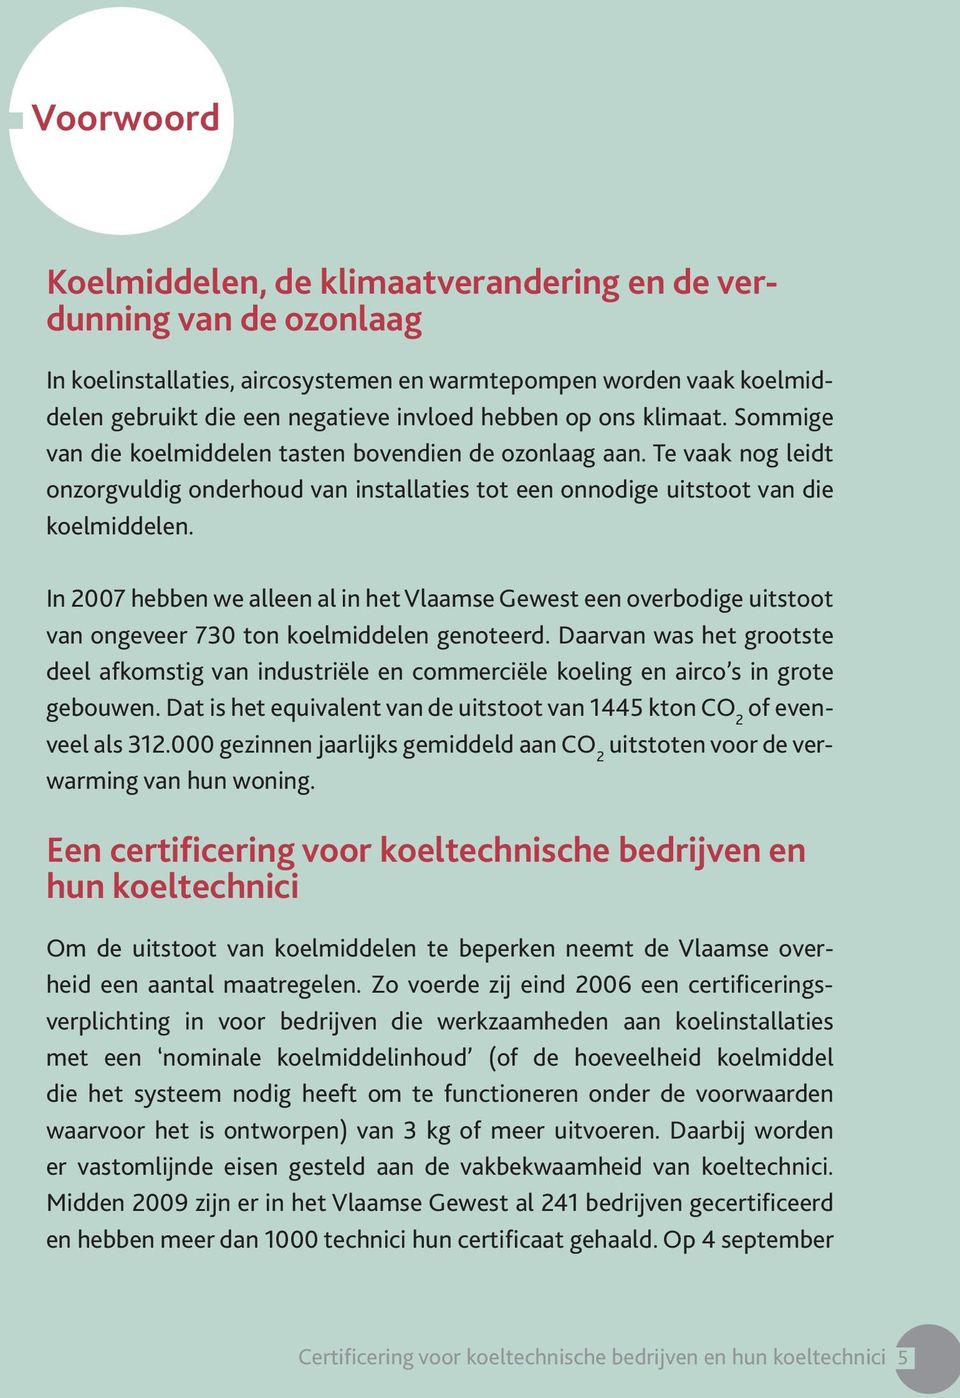 In 2007 hebben we alleen al in het Vlaamse Gewest een overbodige uitstoot van ongeveer 730 ton koelmiddelen genoteerd.